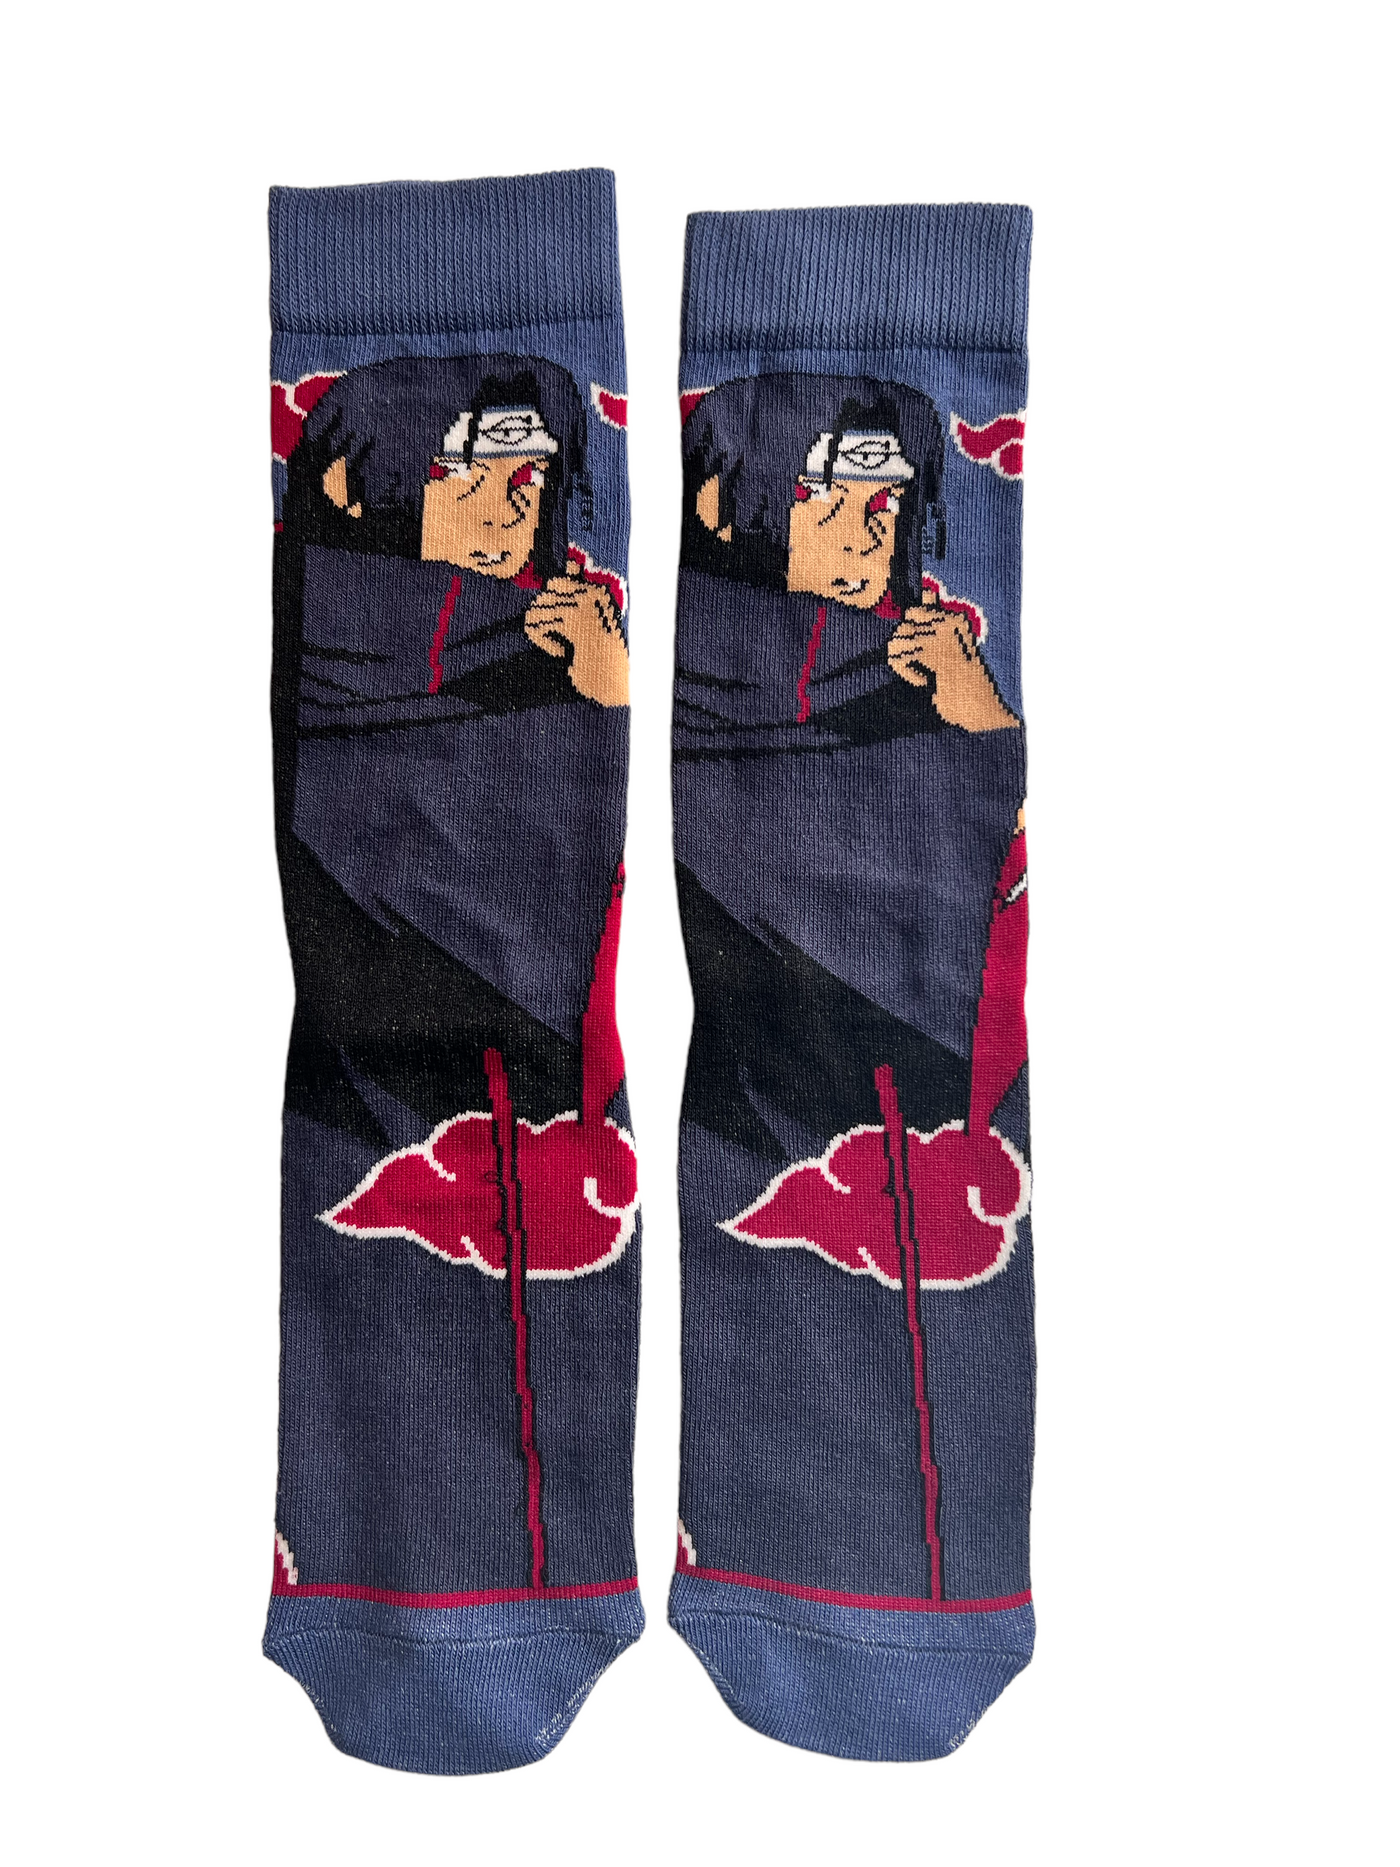 Itachi Uchiha socks 2 - PROBOXS